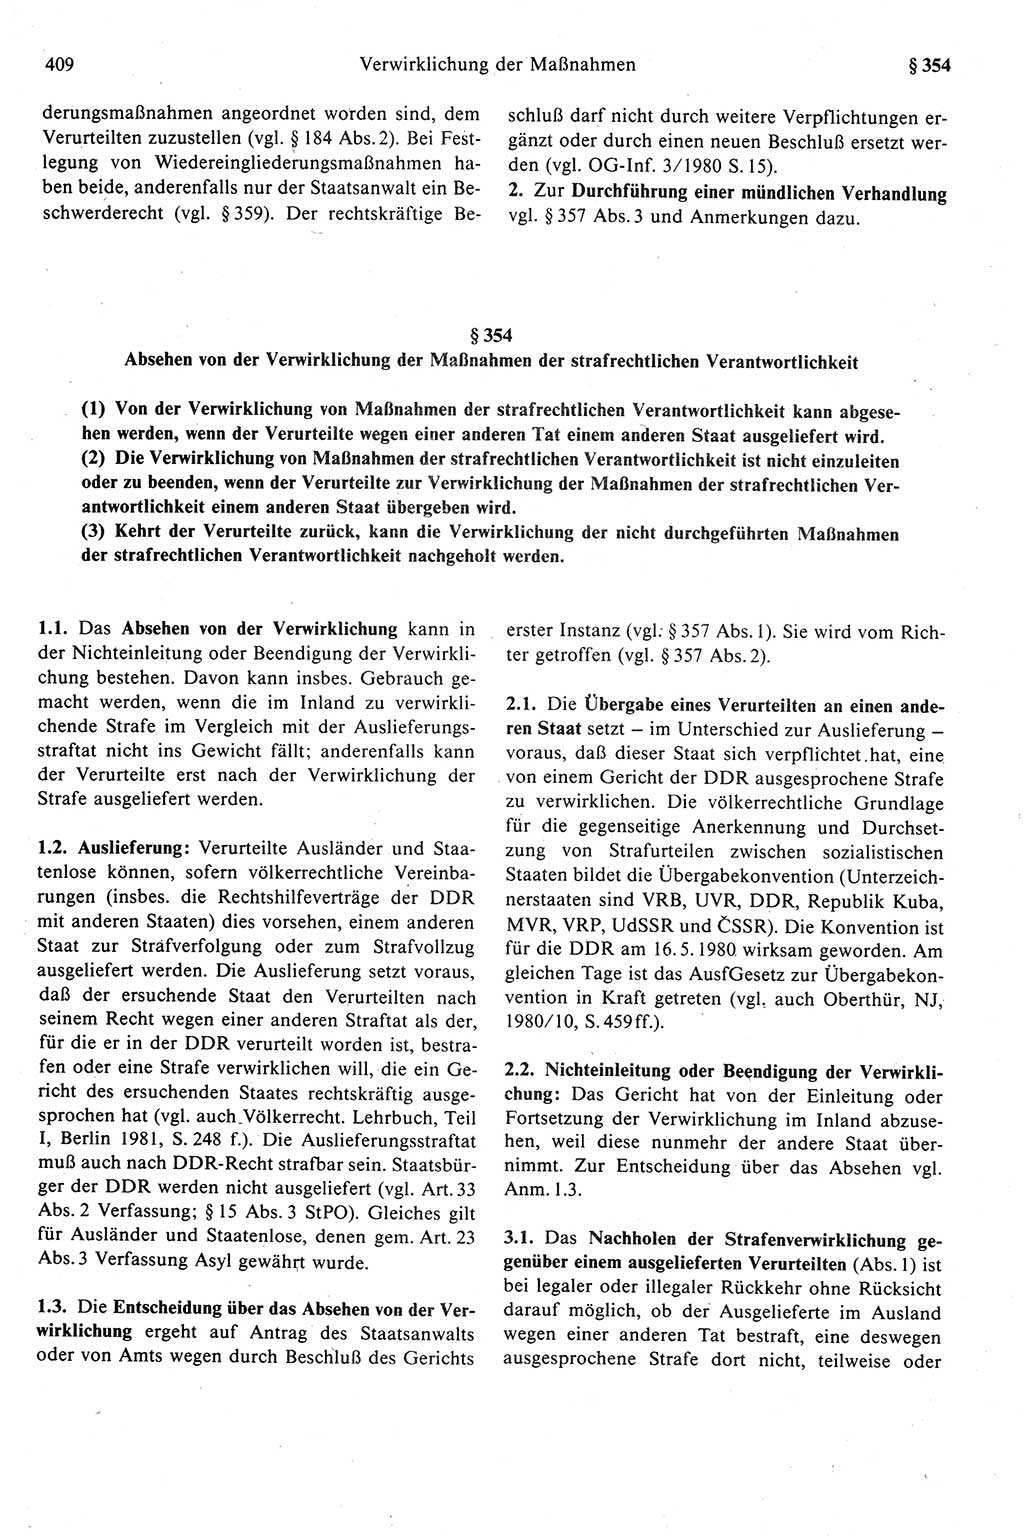 Strafprozeßrecht der DDR (Deutsche Demokratische Republik), Kommentar zur Strafprozeßordnung (StPO) 1989, Seite 409 (Strafprozeßr. DDR Komm. StPO 1989, S. 409)